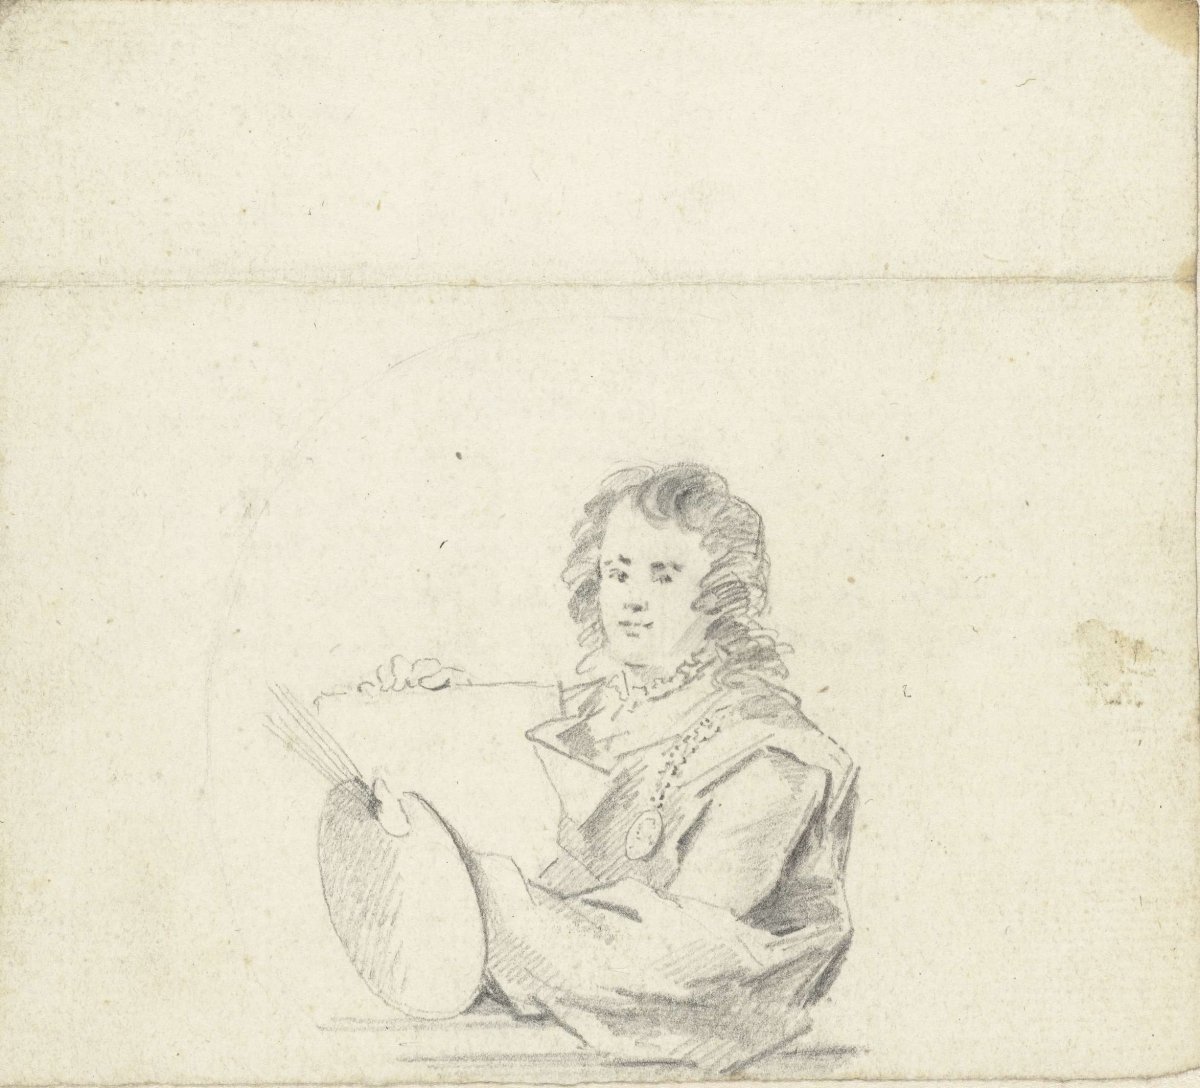 Sketch after self-portrait by Adriaen van der Werff, Jacob Perkois, 1766 - 1804